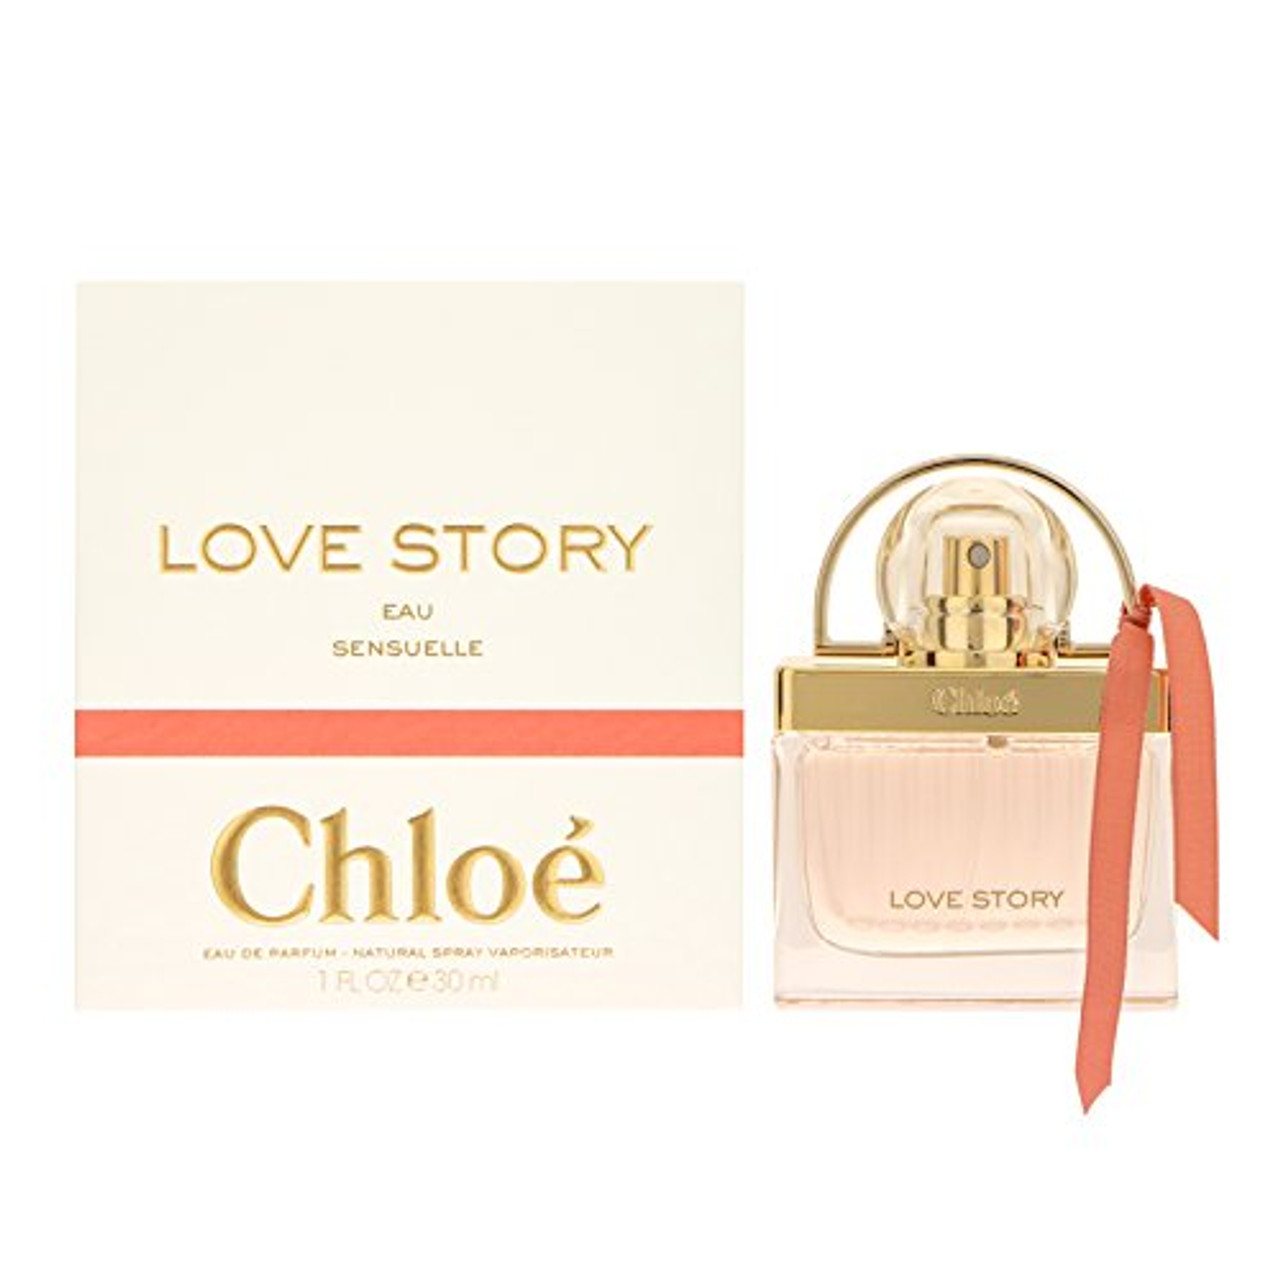 Chloé Love Story sensuelle 30ml Eau De Parfum Eau